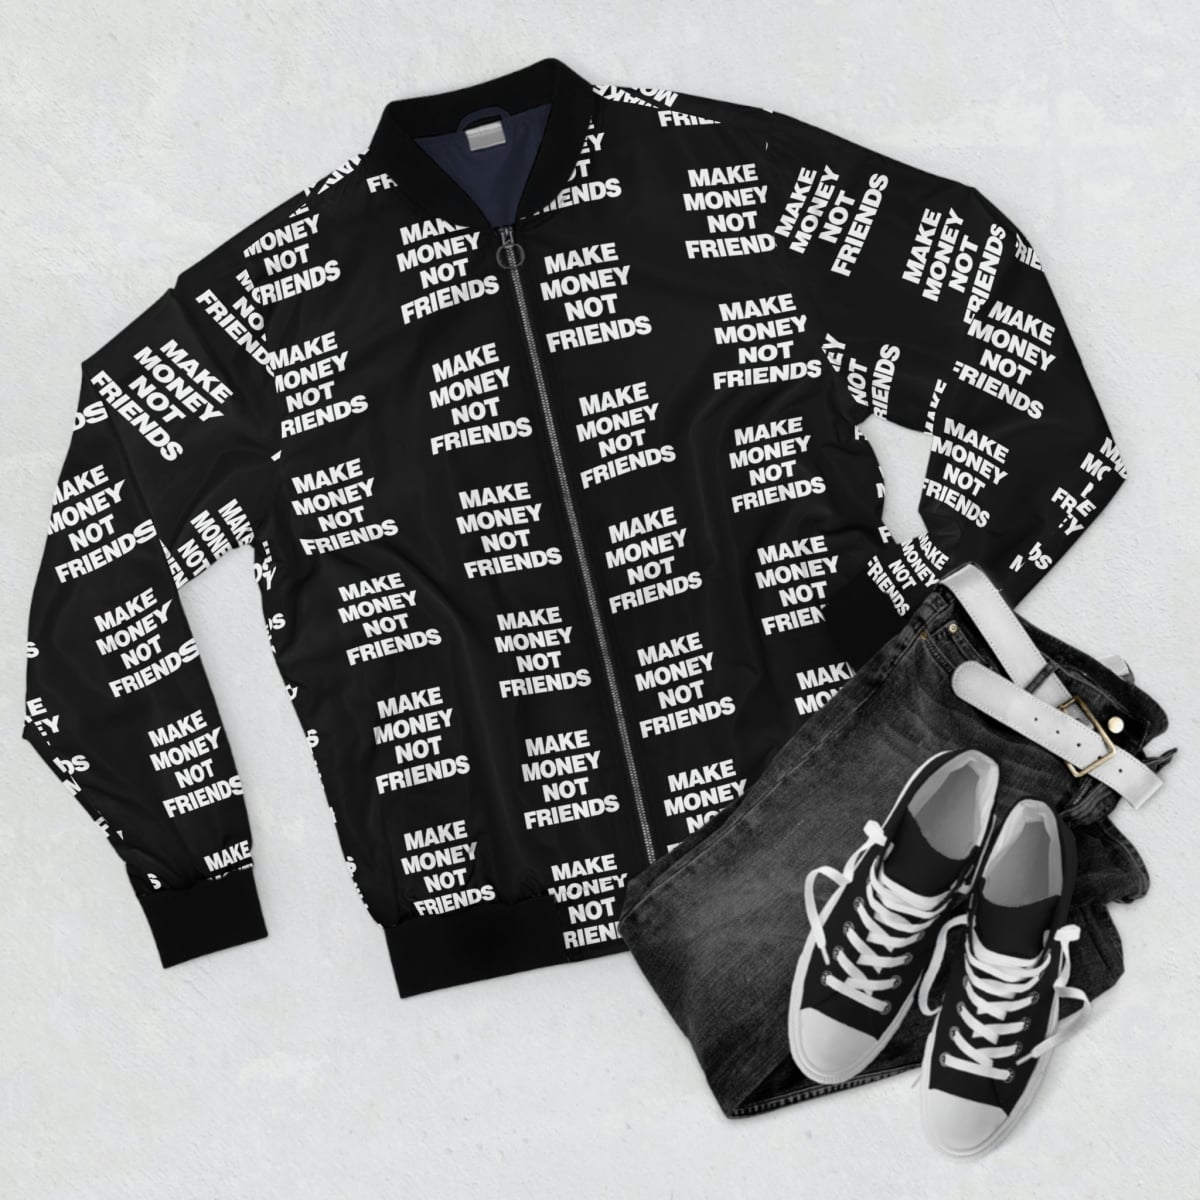 Girls Urban Republic Gray Shiney Plaid Bomber Jacket 14 Large Stylish | eBay